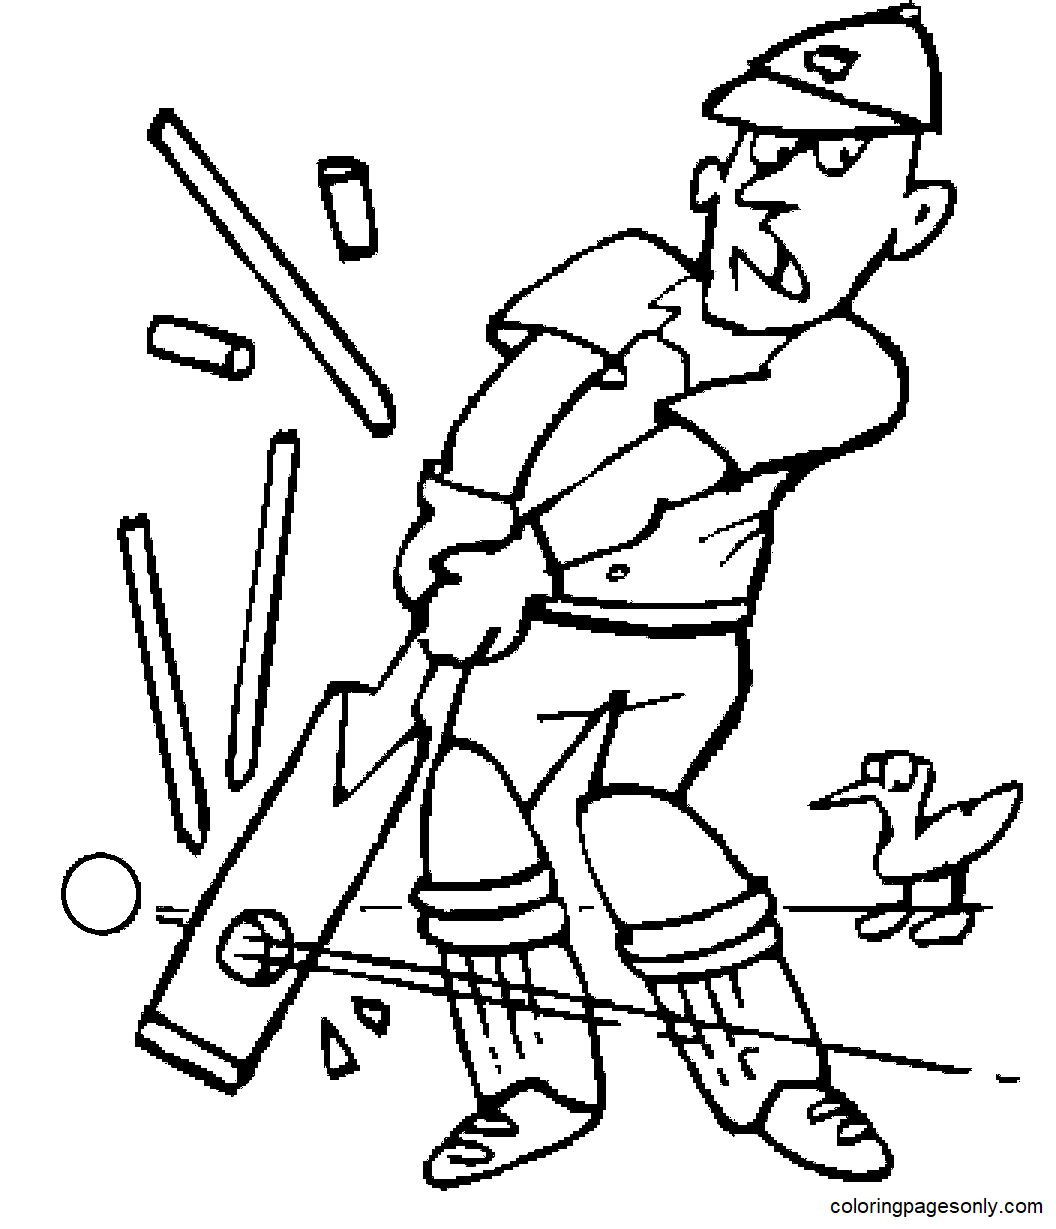 Pagina da colorare di cricket del fumetto